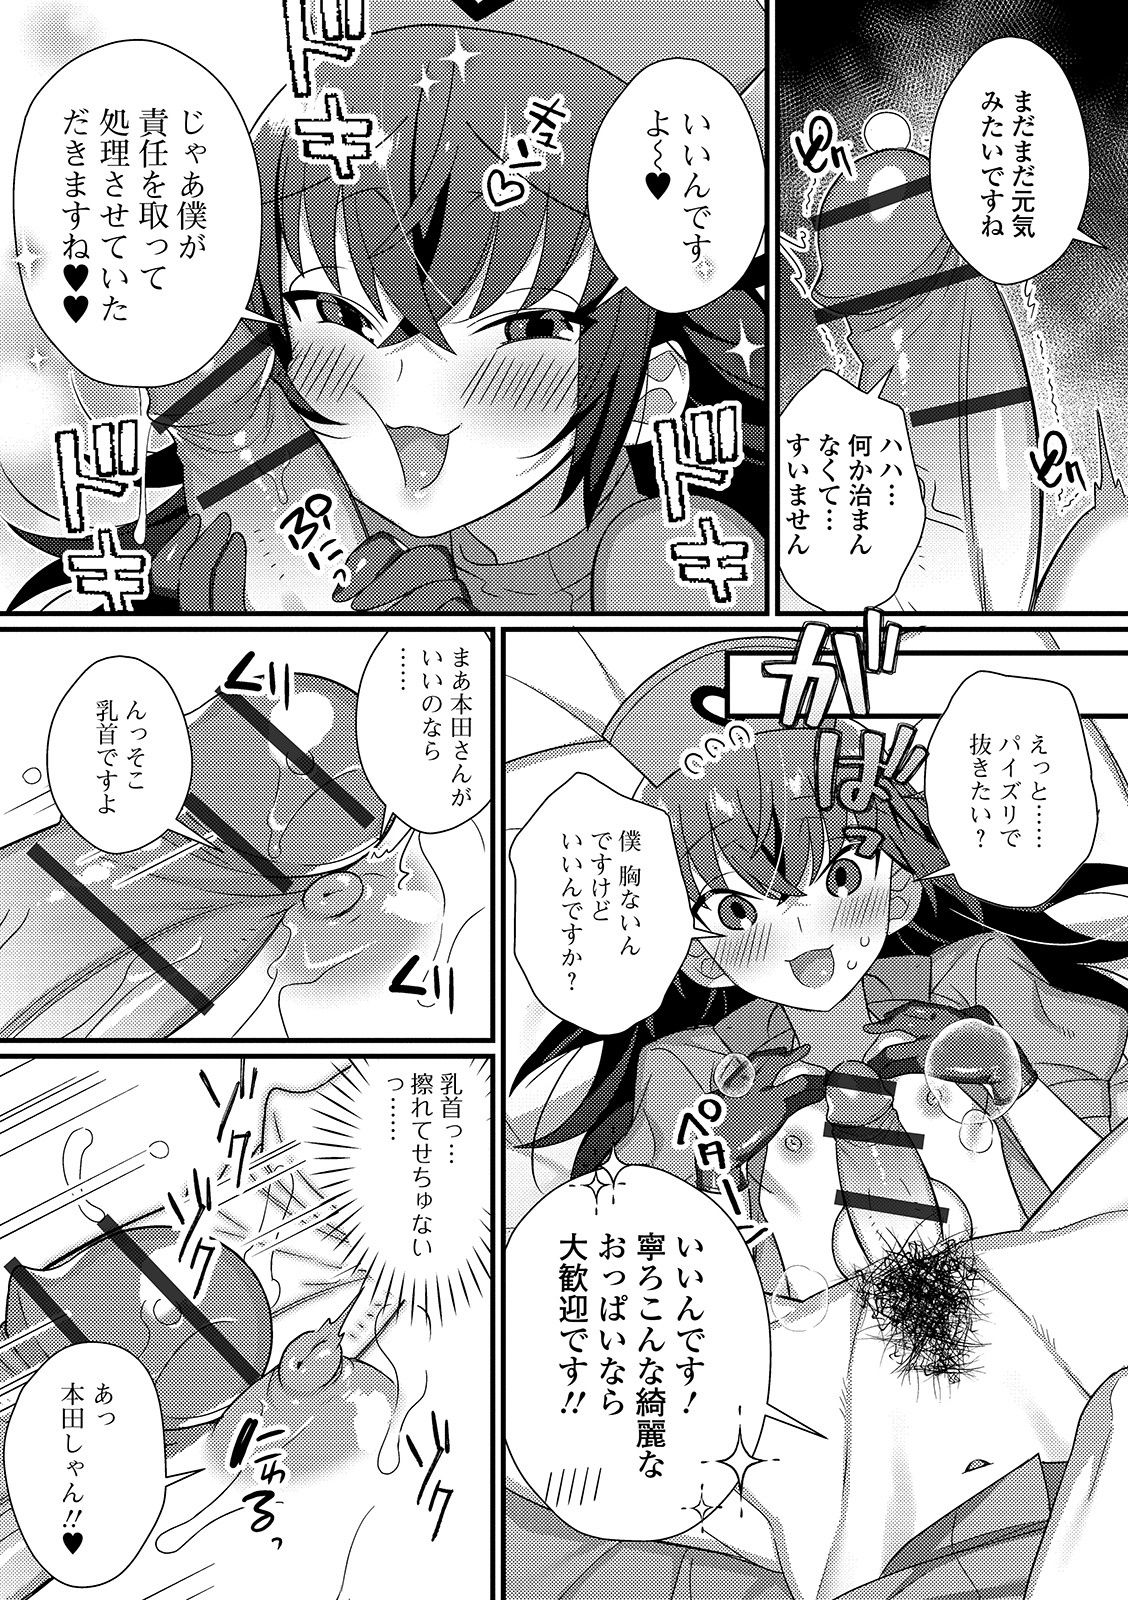 [Anthology] Gekkan Web Otoko no Ko-llection! S Vol. 45 [Digital] page 25 full